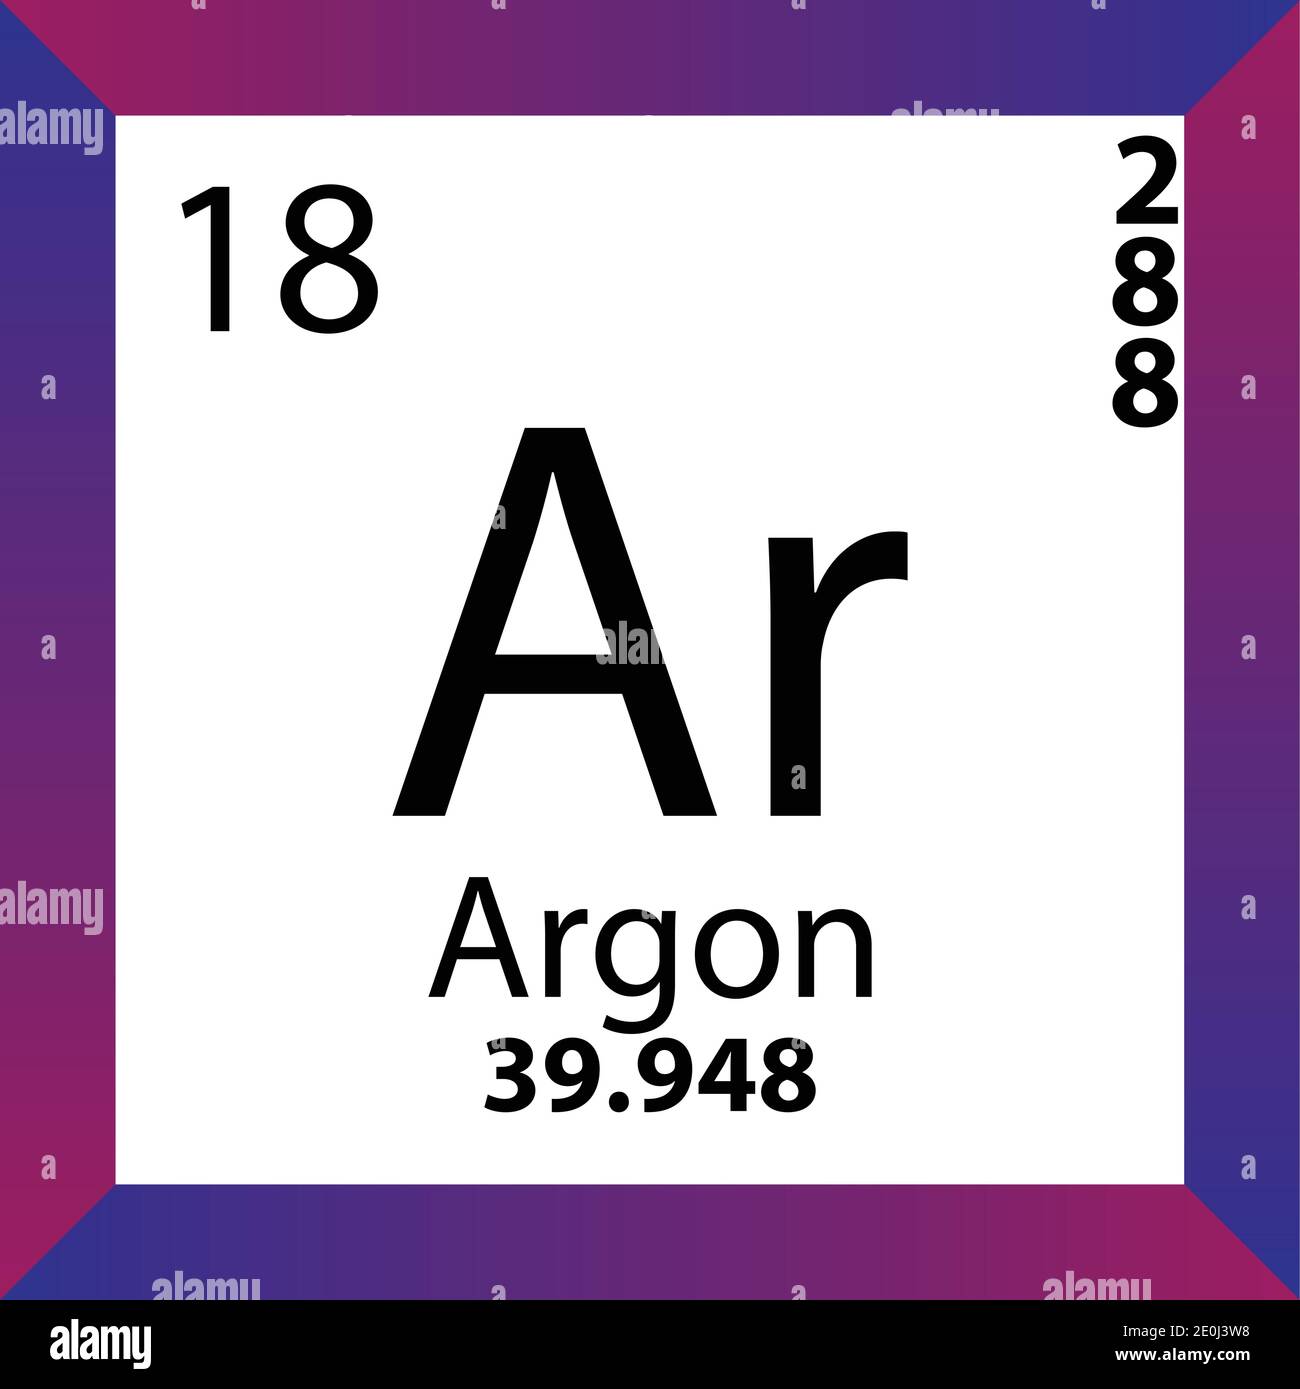 Argon, Ar